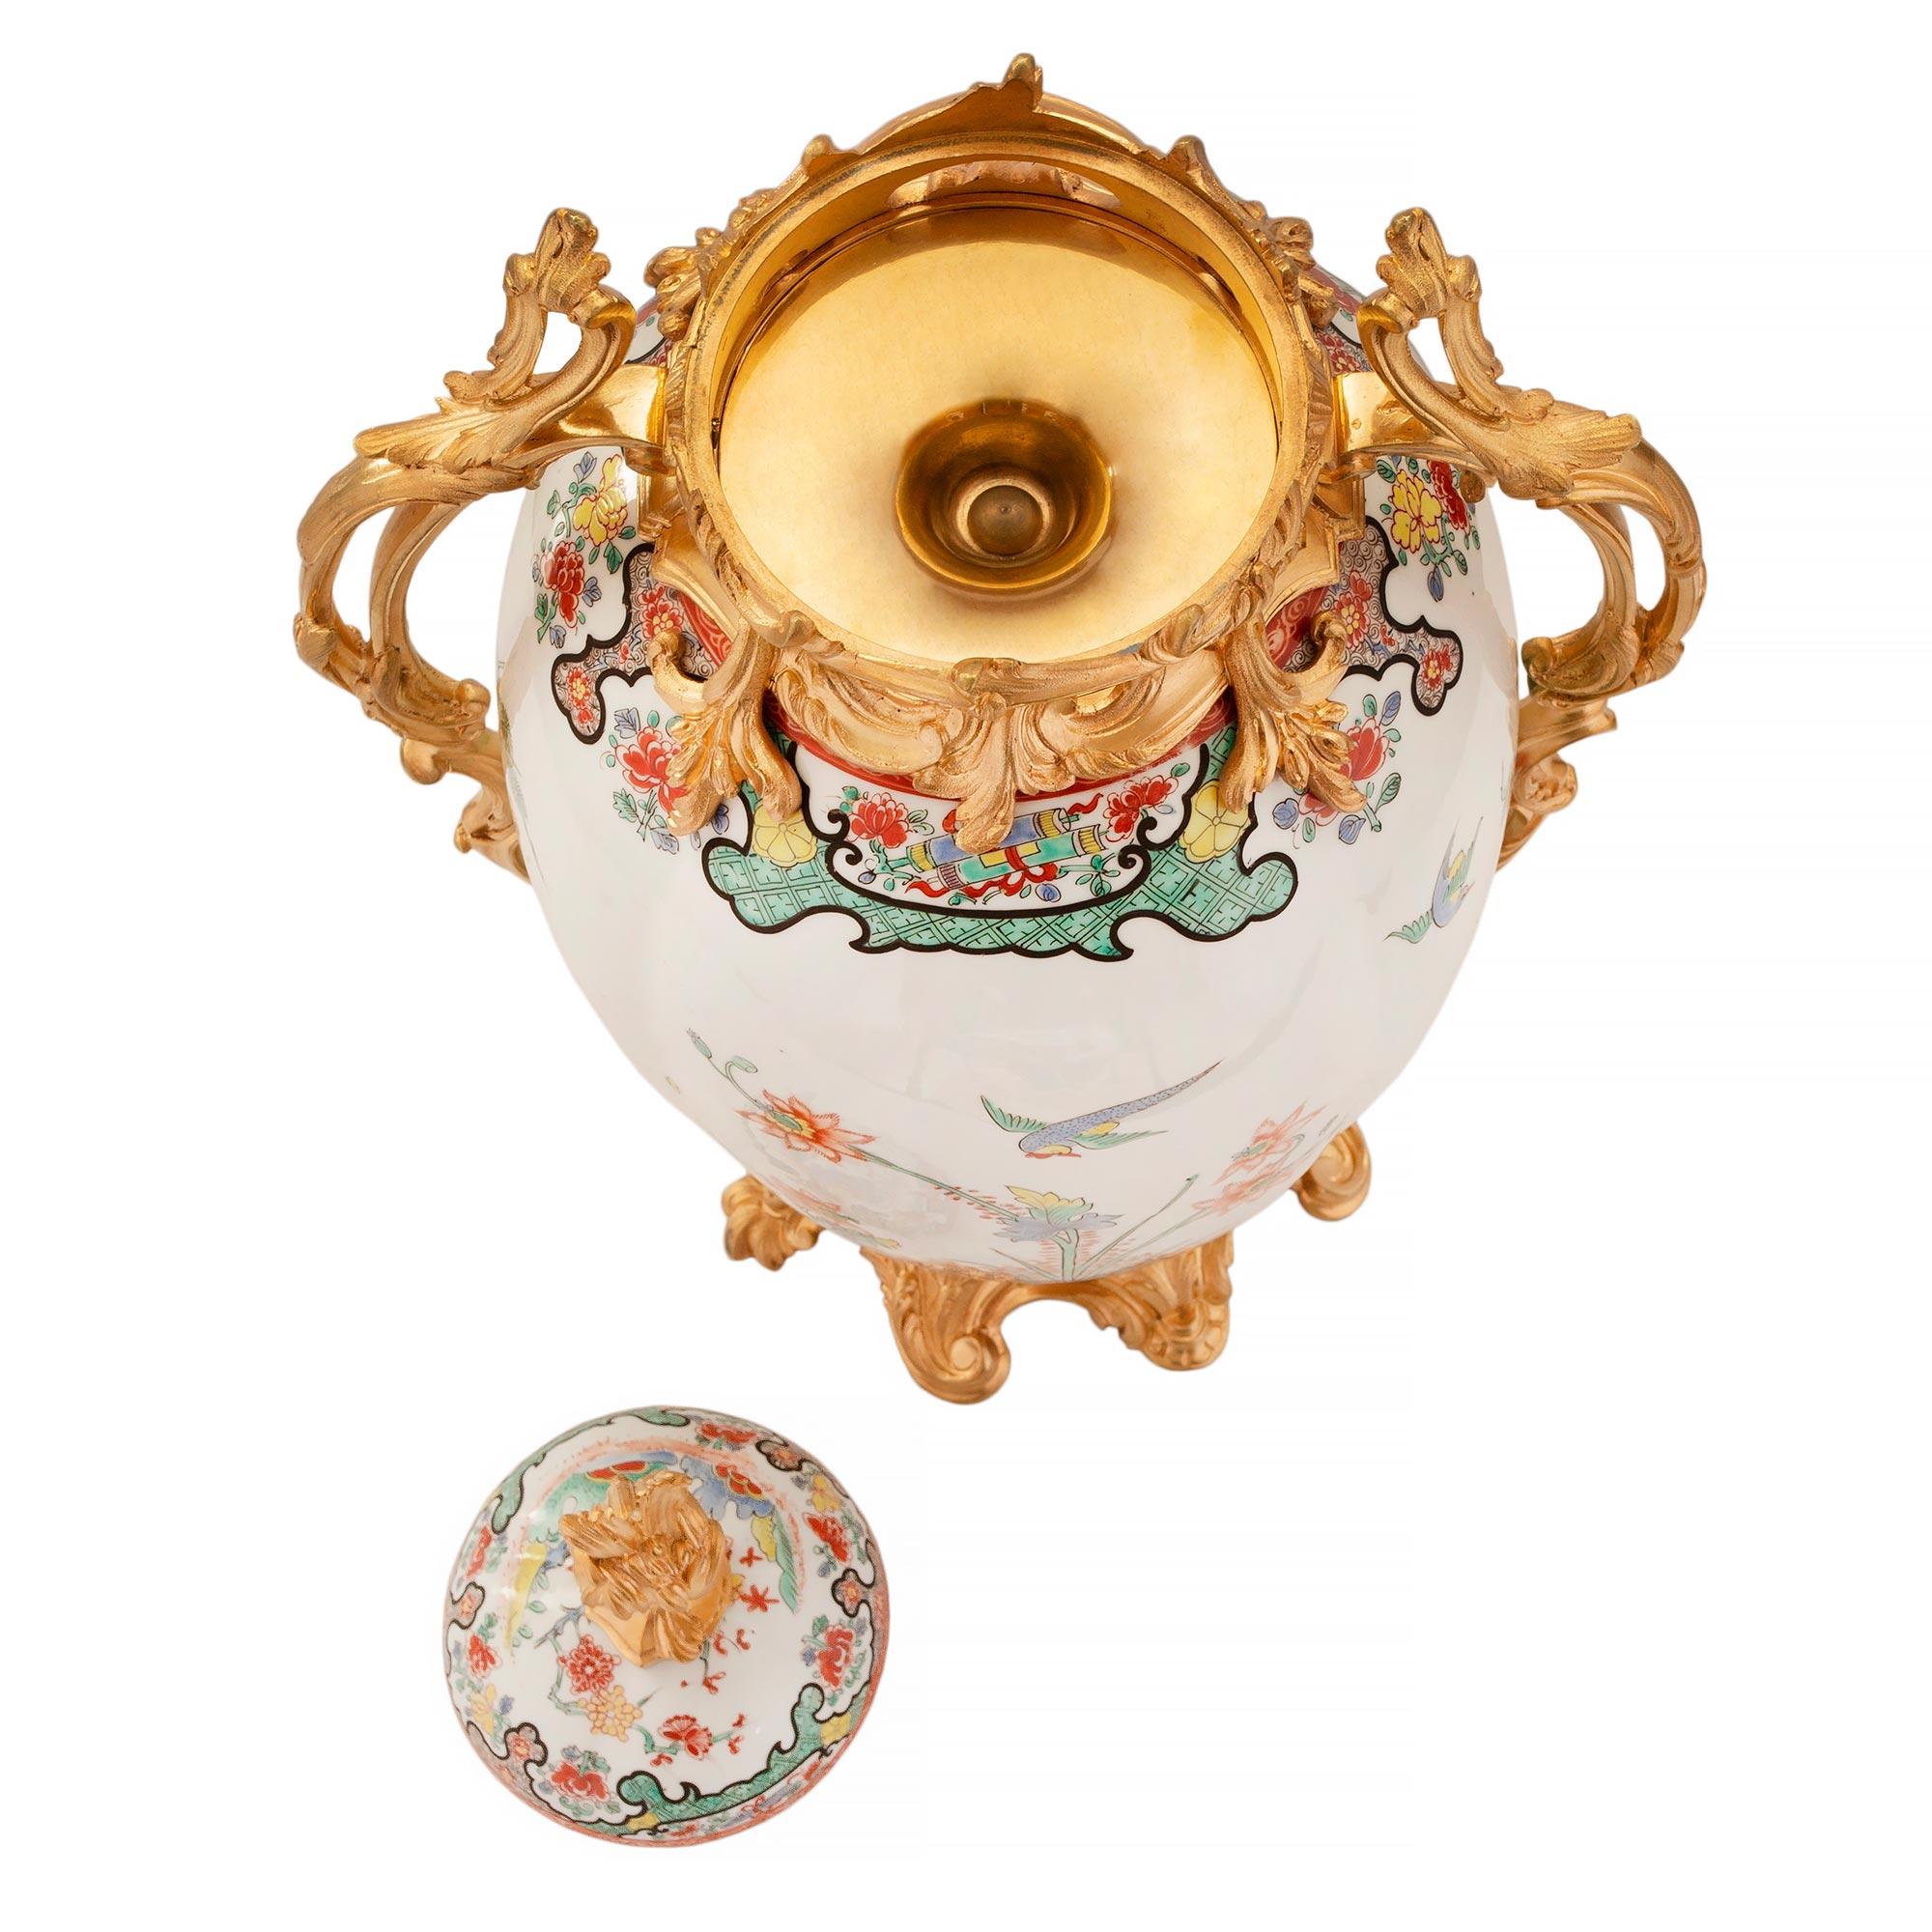 Ein sensationelles und großformatiges Paar französischer St. Samson-Porzellan- und Ormolu-Deckelurnen des 19. Jahrhunderts im Louis XV-Stil. Das Paar steht auf einem überhöhten Ormolu-Sockel mit Akanthusblatt-Motiven. Die kreisrunde, längliche Vase